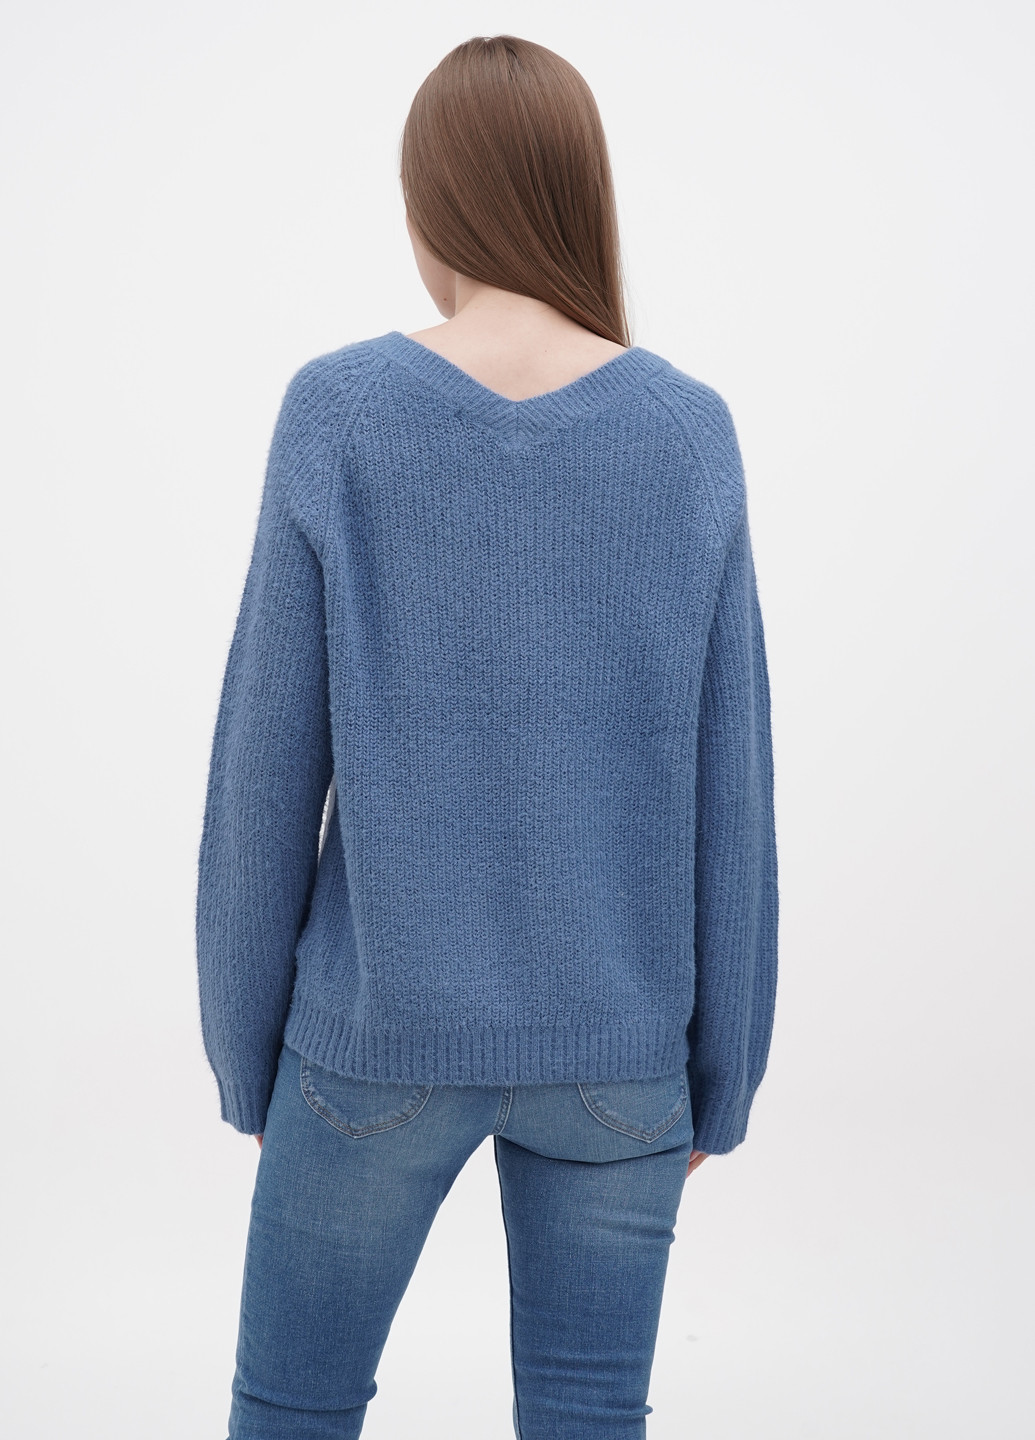 Синий зимний пуловер пуловер Only